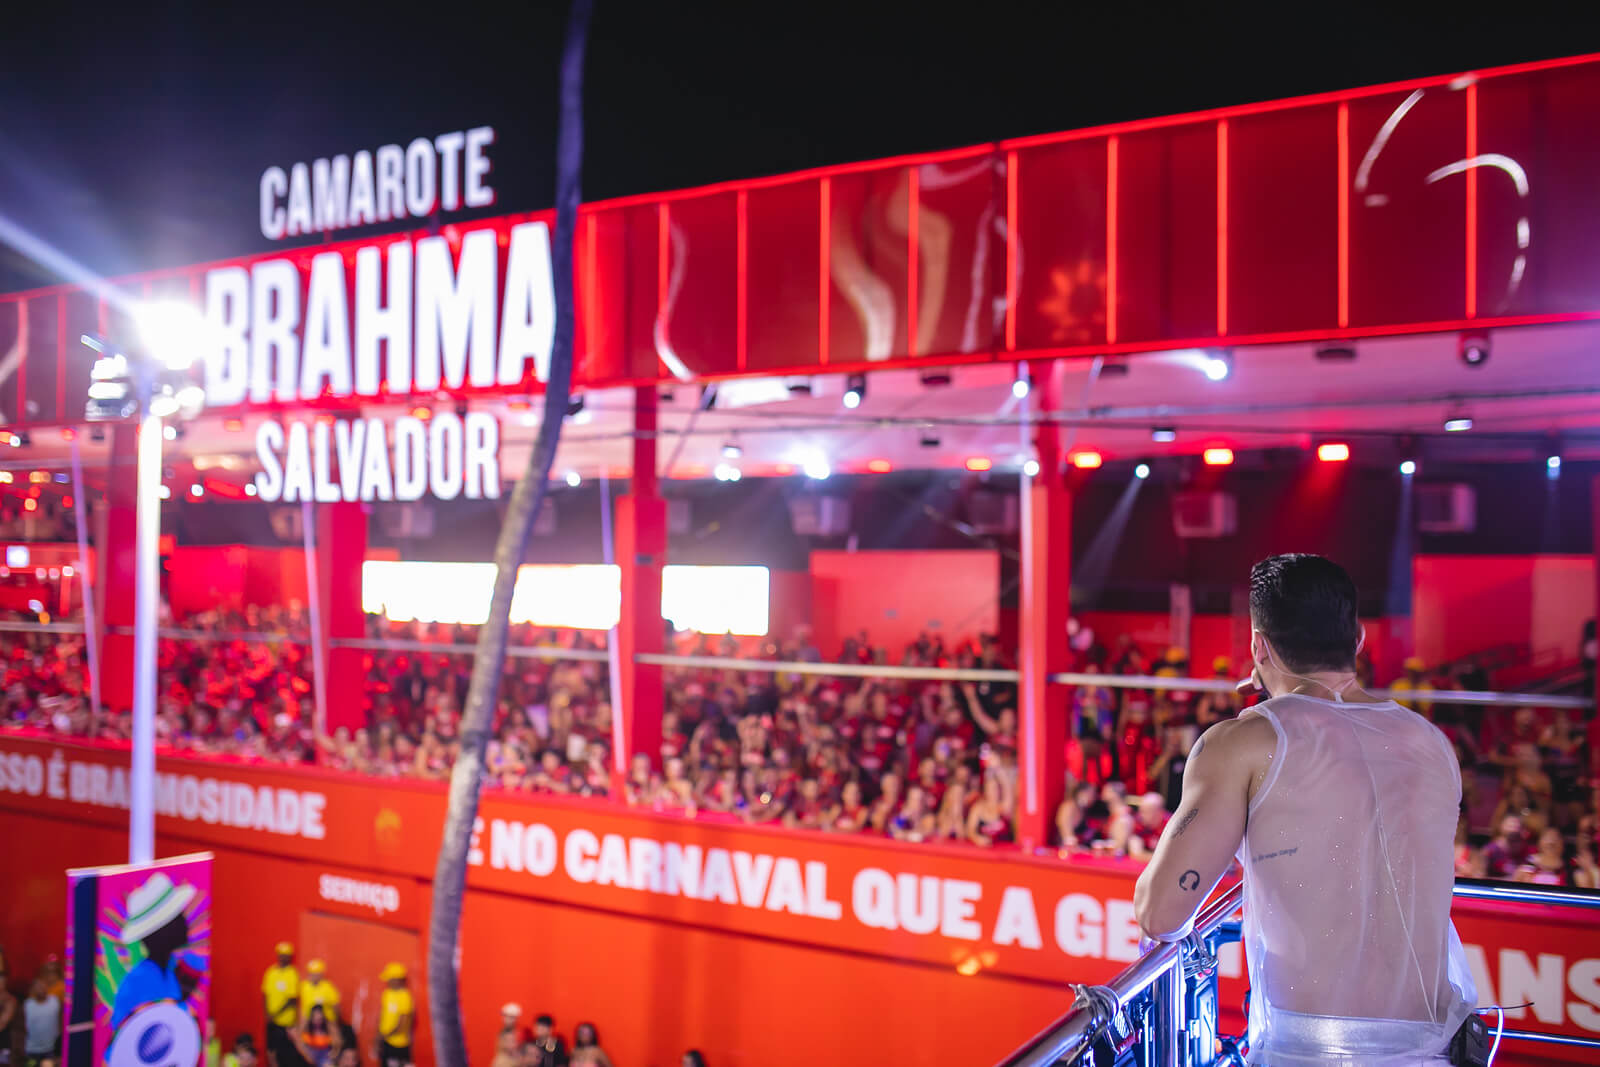 Papazoni arrasta multidão com hit “Eu Tive Um Amor”, no circuito Barra Ondina 83